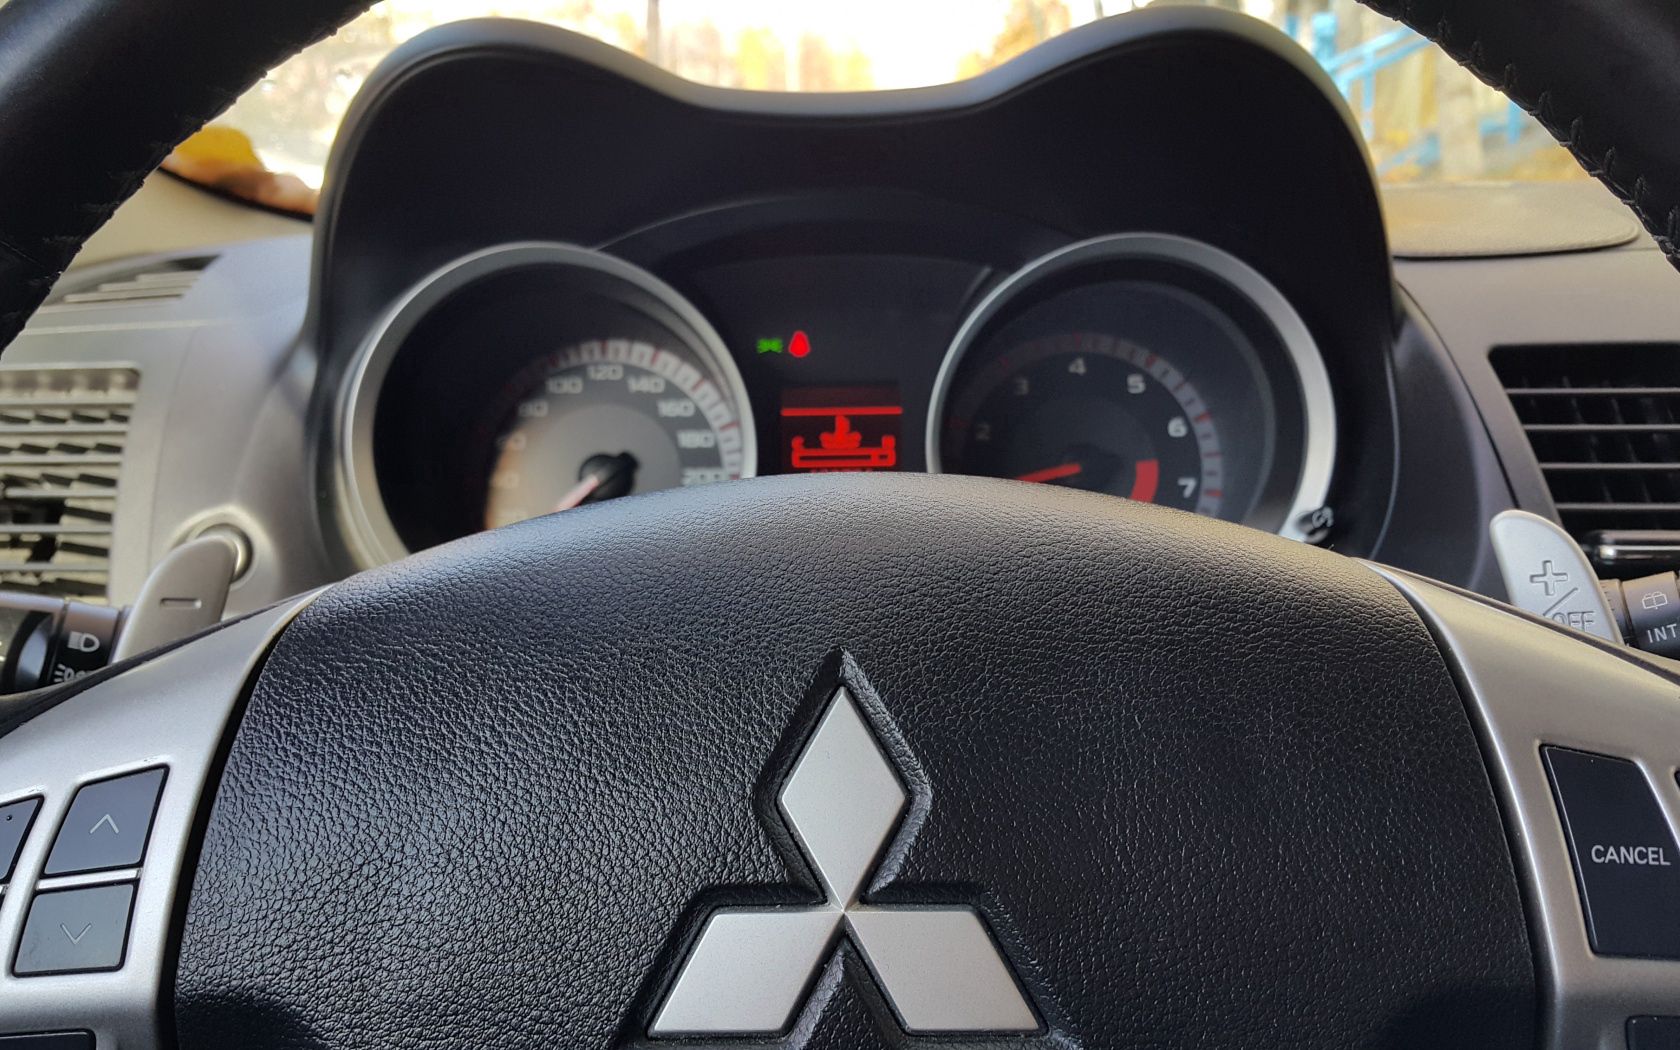 mitsubishi, cars, steering wheel, rudder, logo, logotype